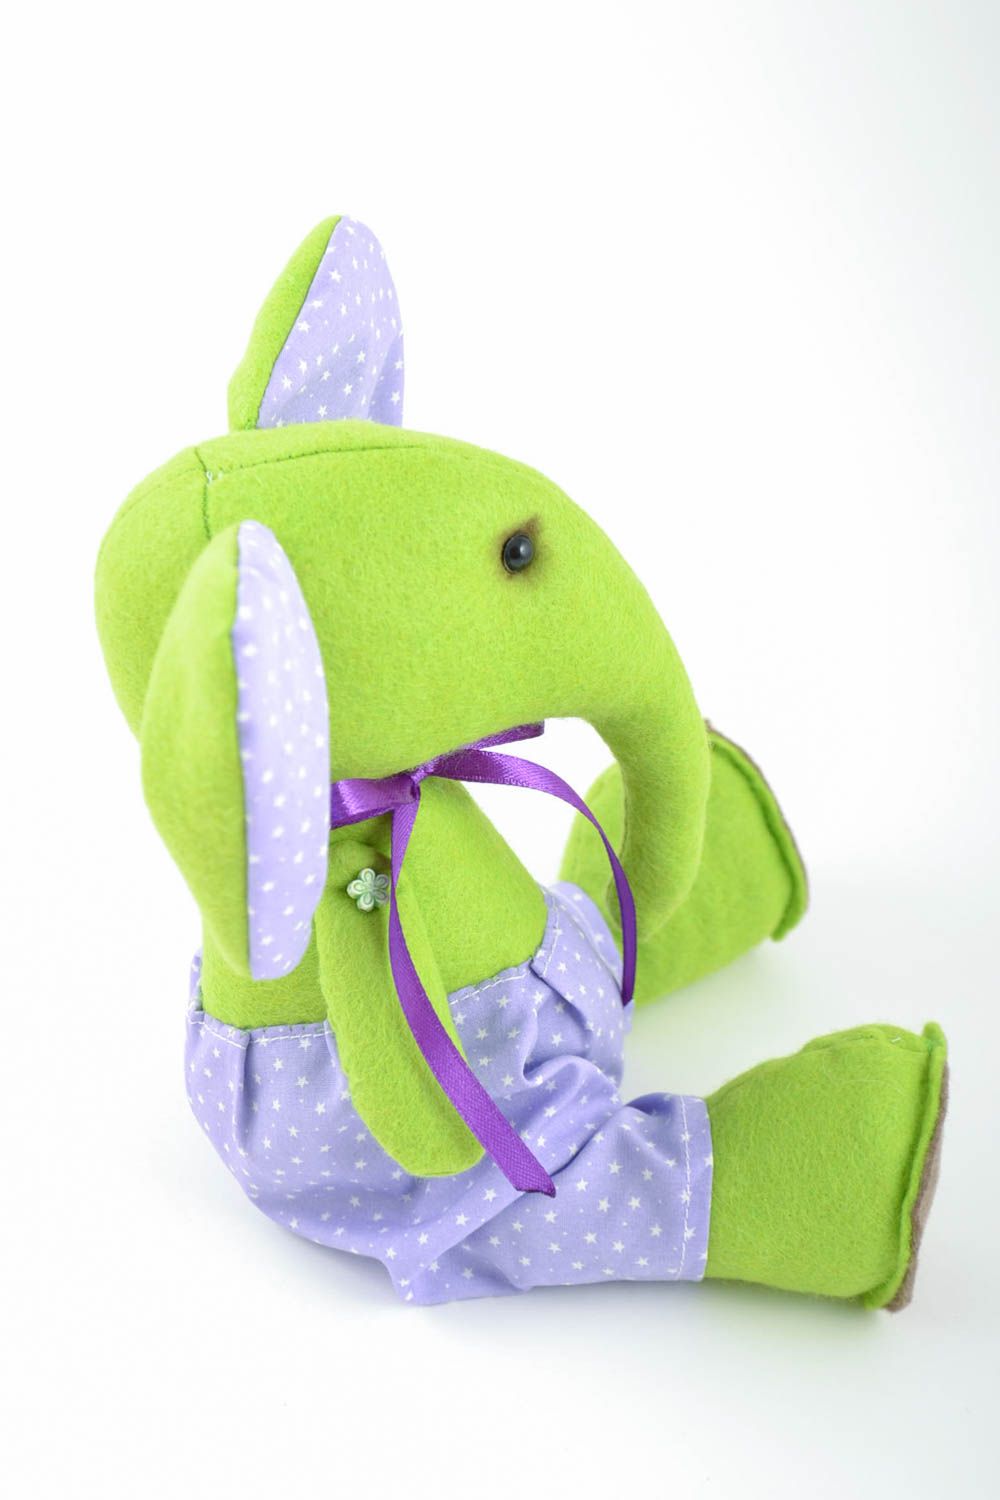 Filz Kuscheltier Elefant von Handarbeit in Hellgrün schön klein süß für Kinder foto 4